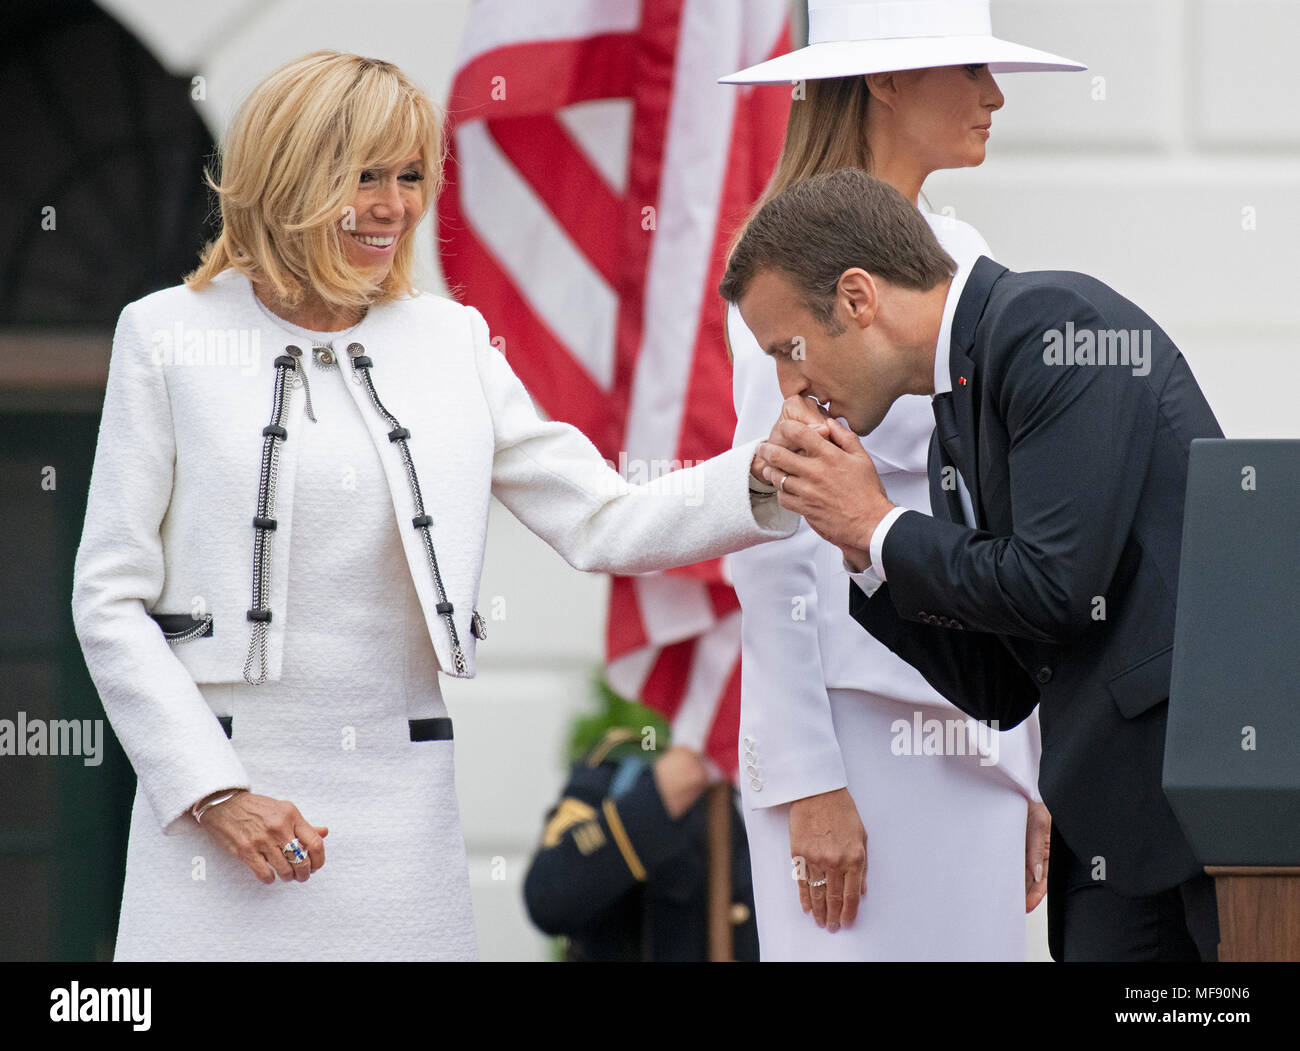 Le Président Emmanuel Macron de France bisous la main de sa femme, Brigitte Macron, à l'issue d'une cérémonie d'arrivée sur la pelouse Sud de la Maison Blanche à Washington, DC le mardi 24 avril 2018. Première dame Melania Trump est représenté derrière eux. Credit : Ron Sachs/CNP /MediaPunch Banque D'Images